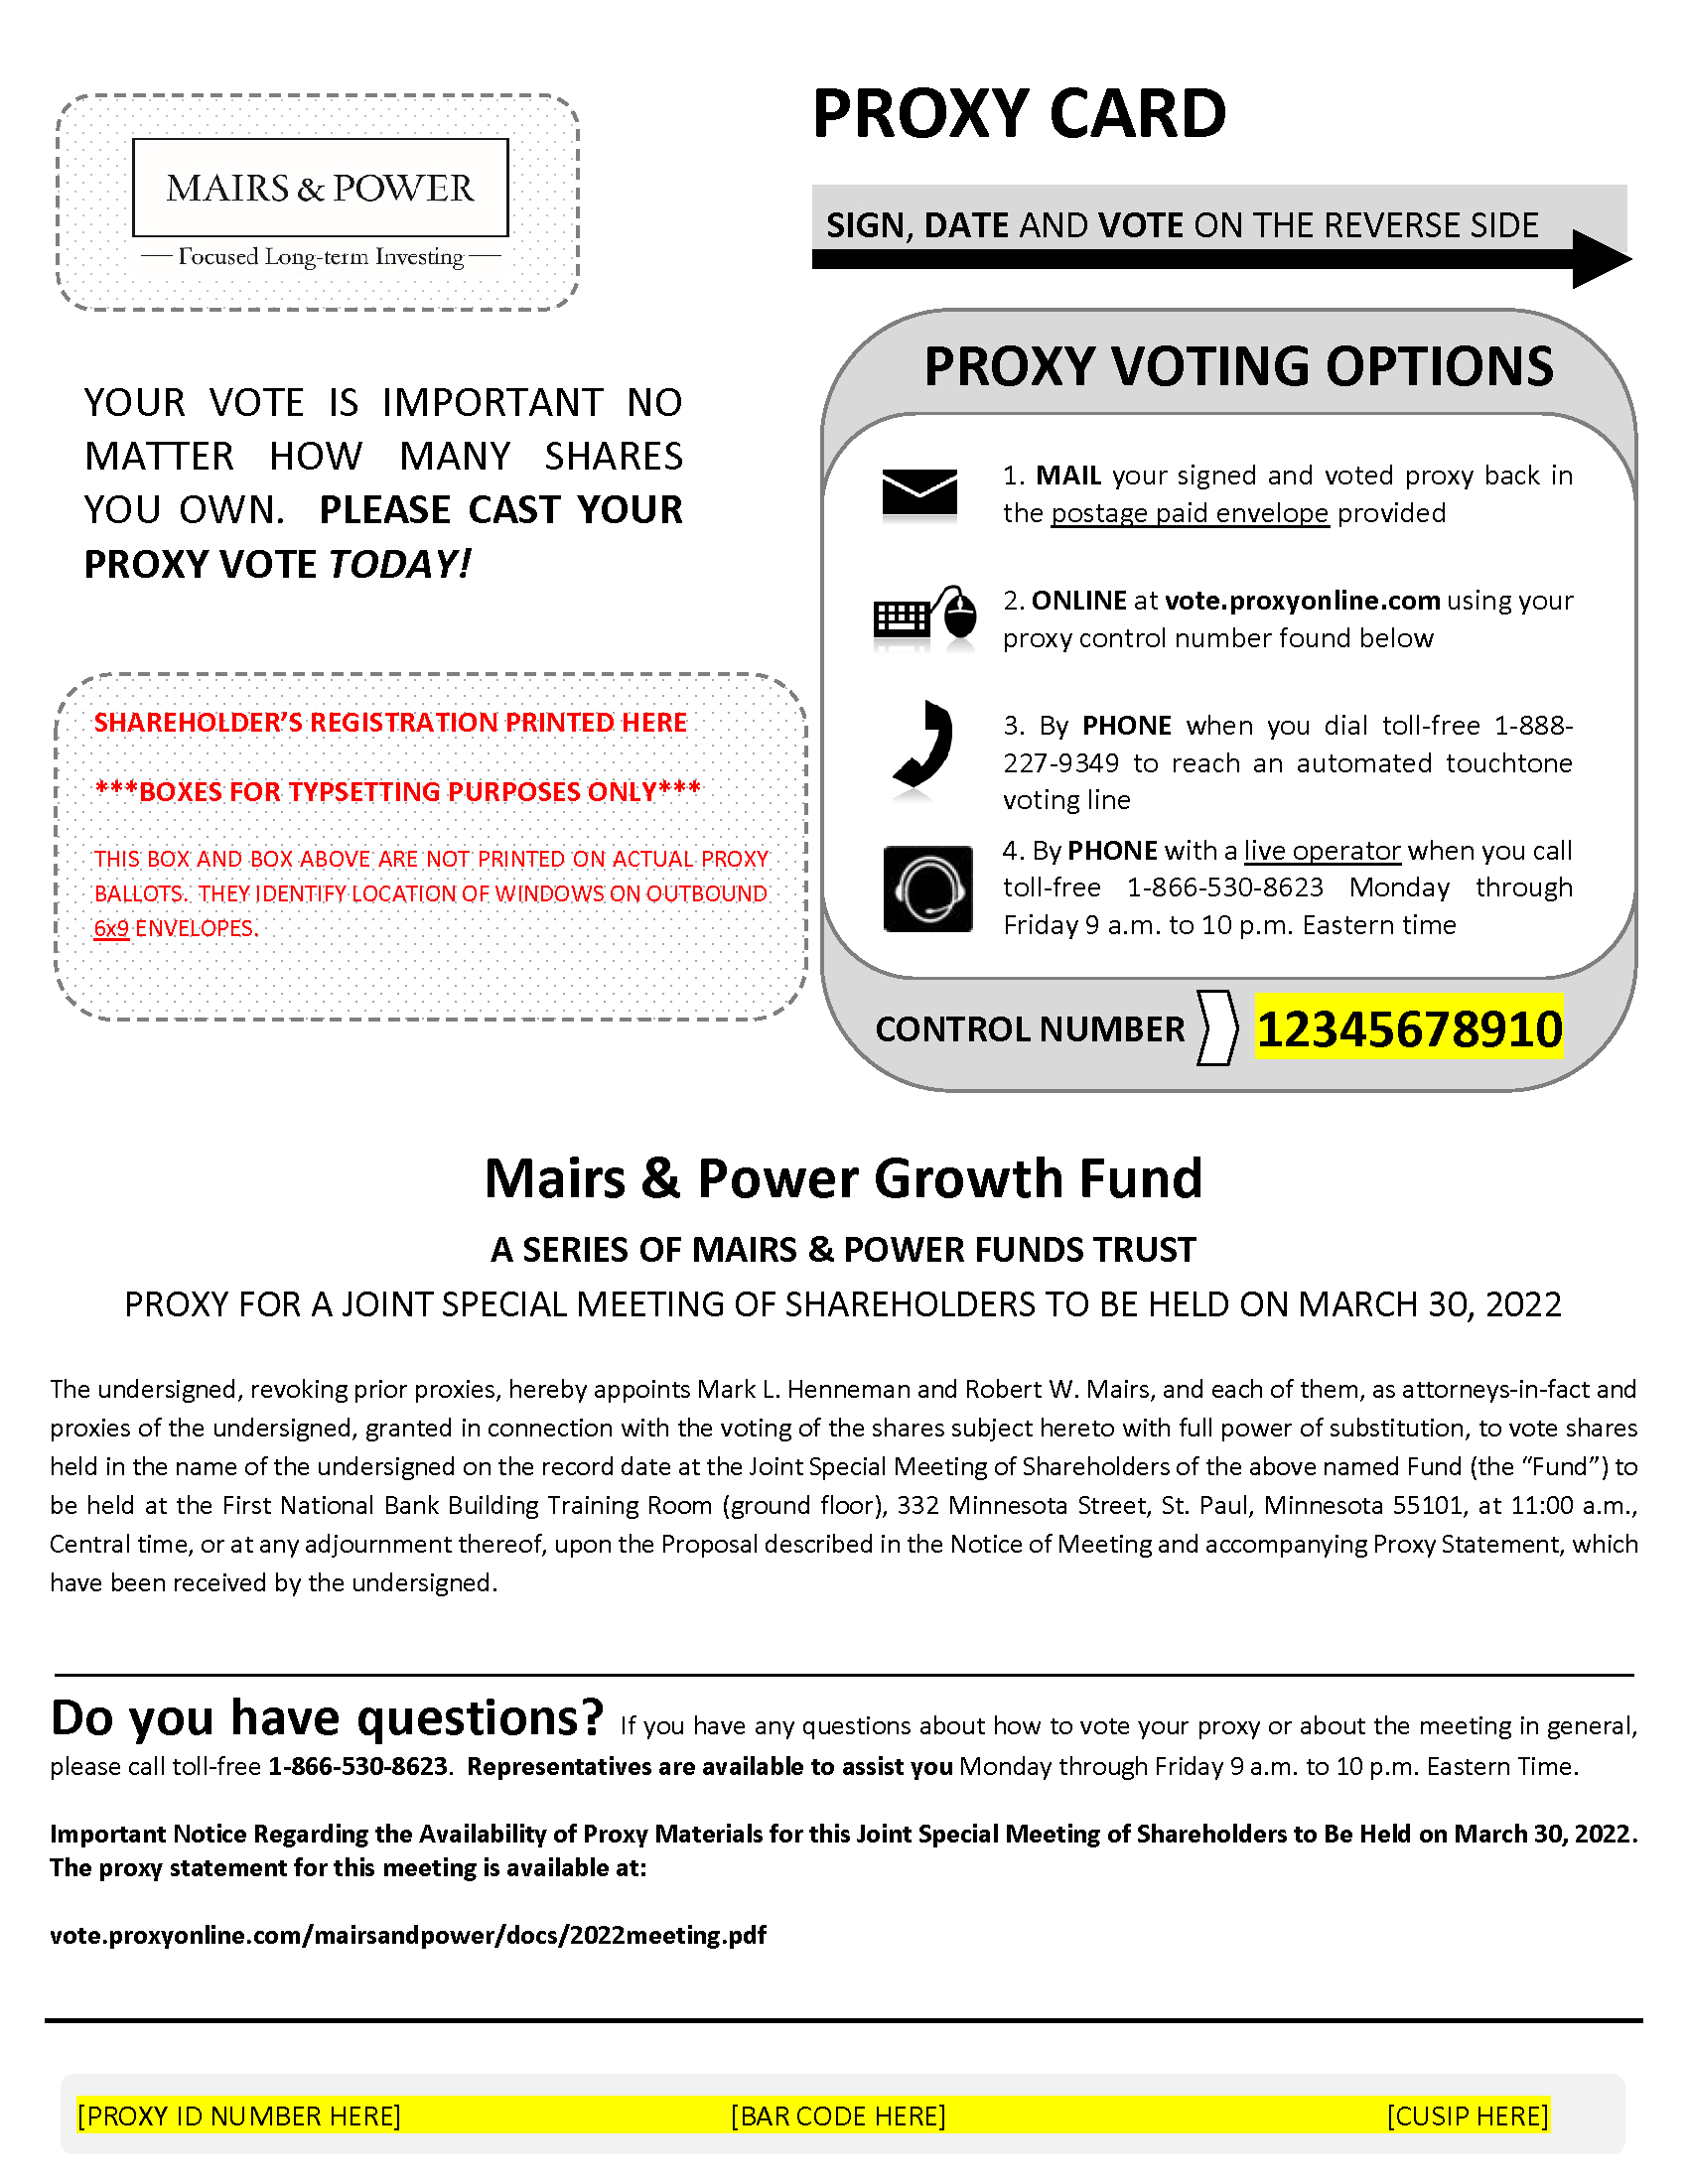 proxycard-growthfund1b.jpg